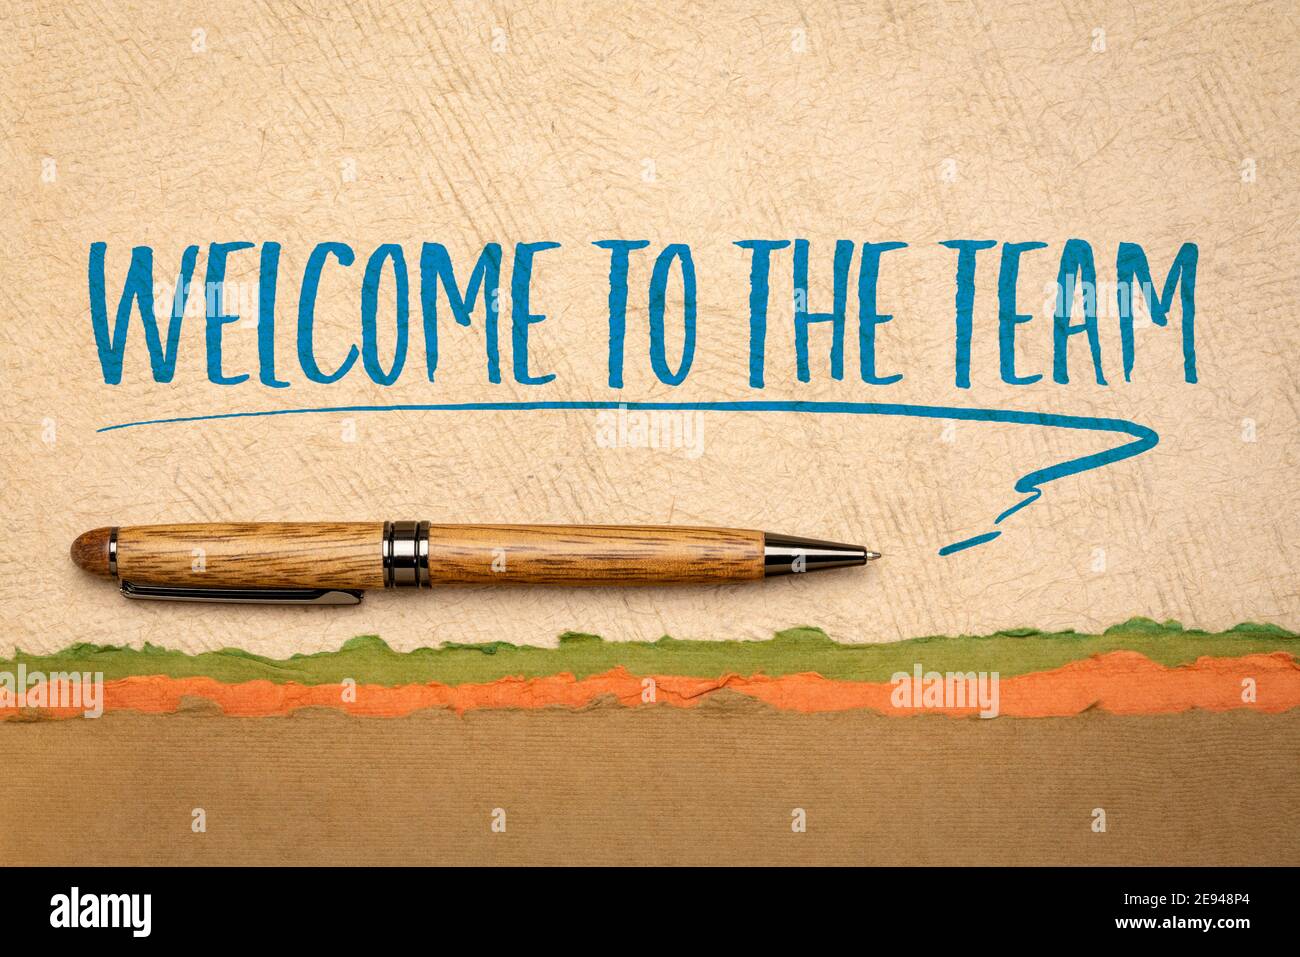 Willkommen im Team Grüße - motivierende Handschrift auf handgeschöpftem Strukturpapier mit stilvollem Stift, Business- und Teamwork-Konzept Stockfoto